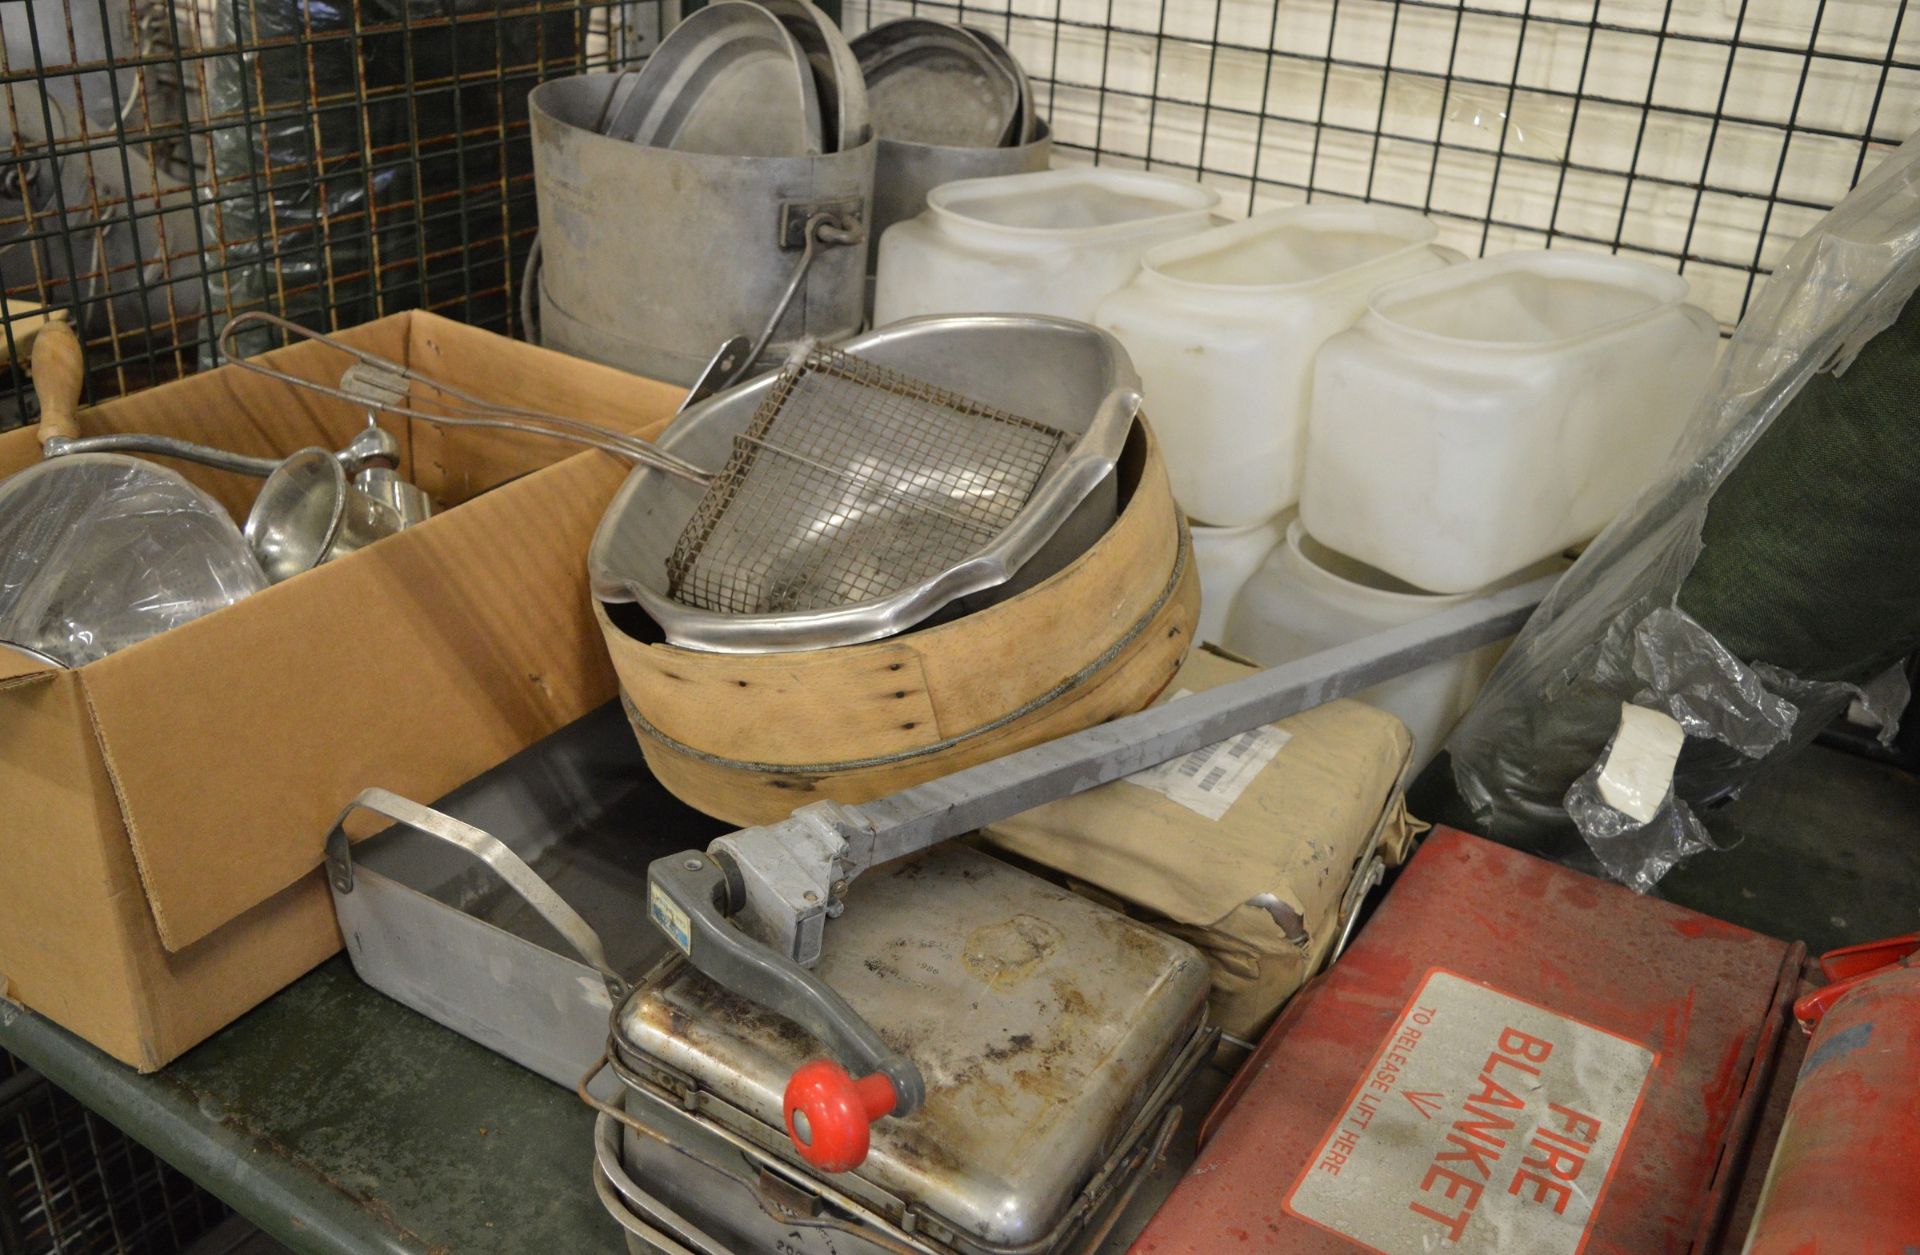 Field catering kit - Cooker, Oven, Utensil kit, pots, pans - Image 3 of 5